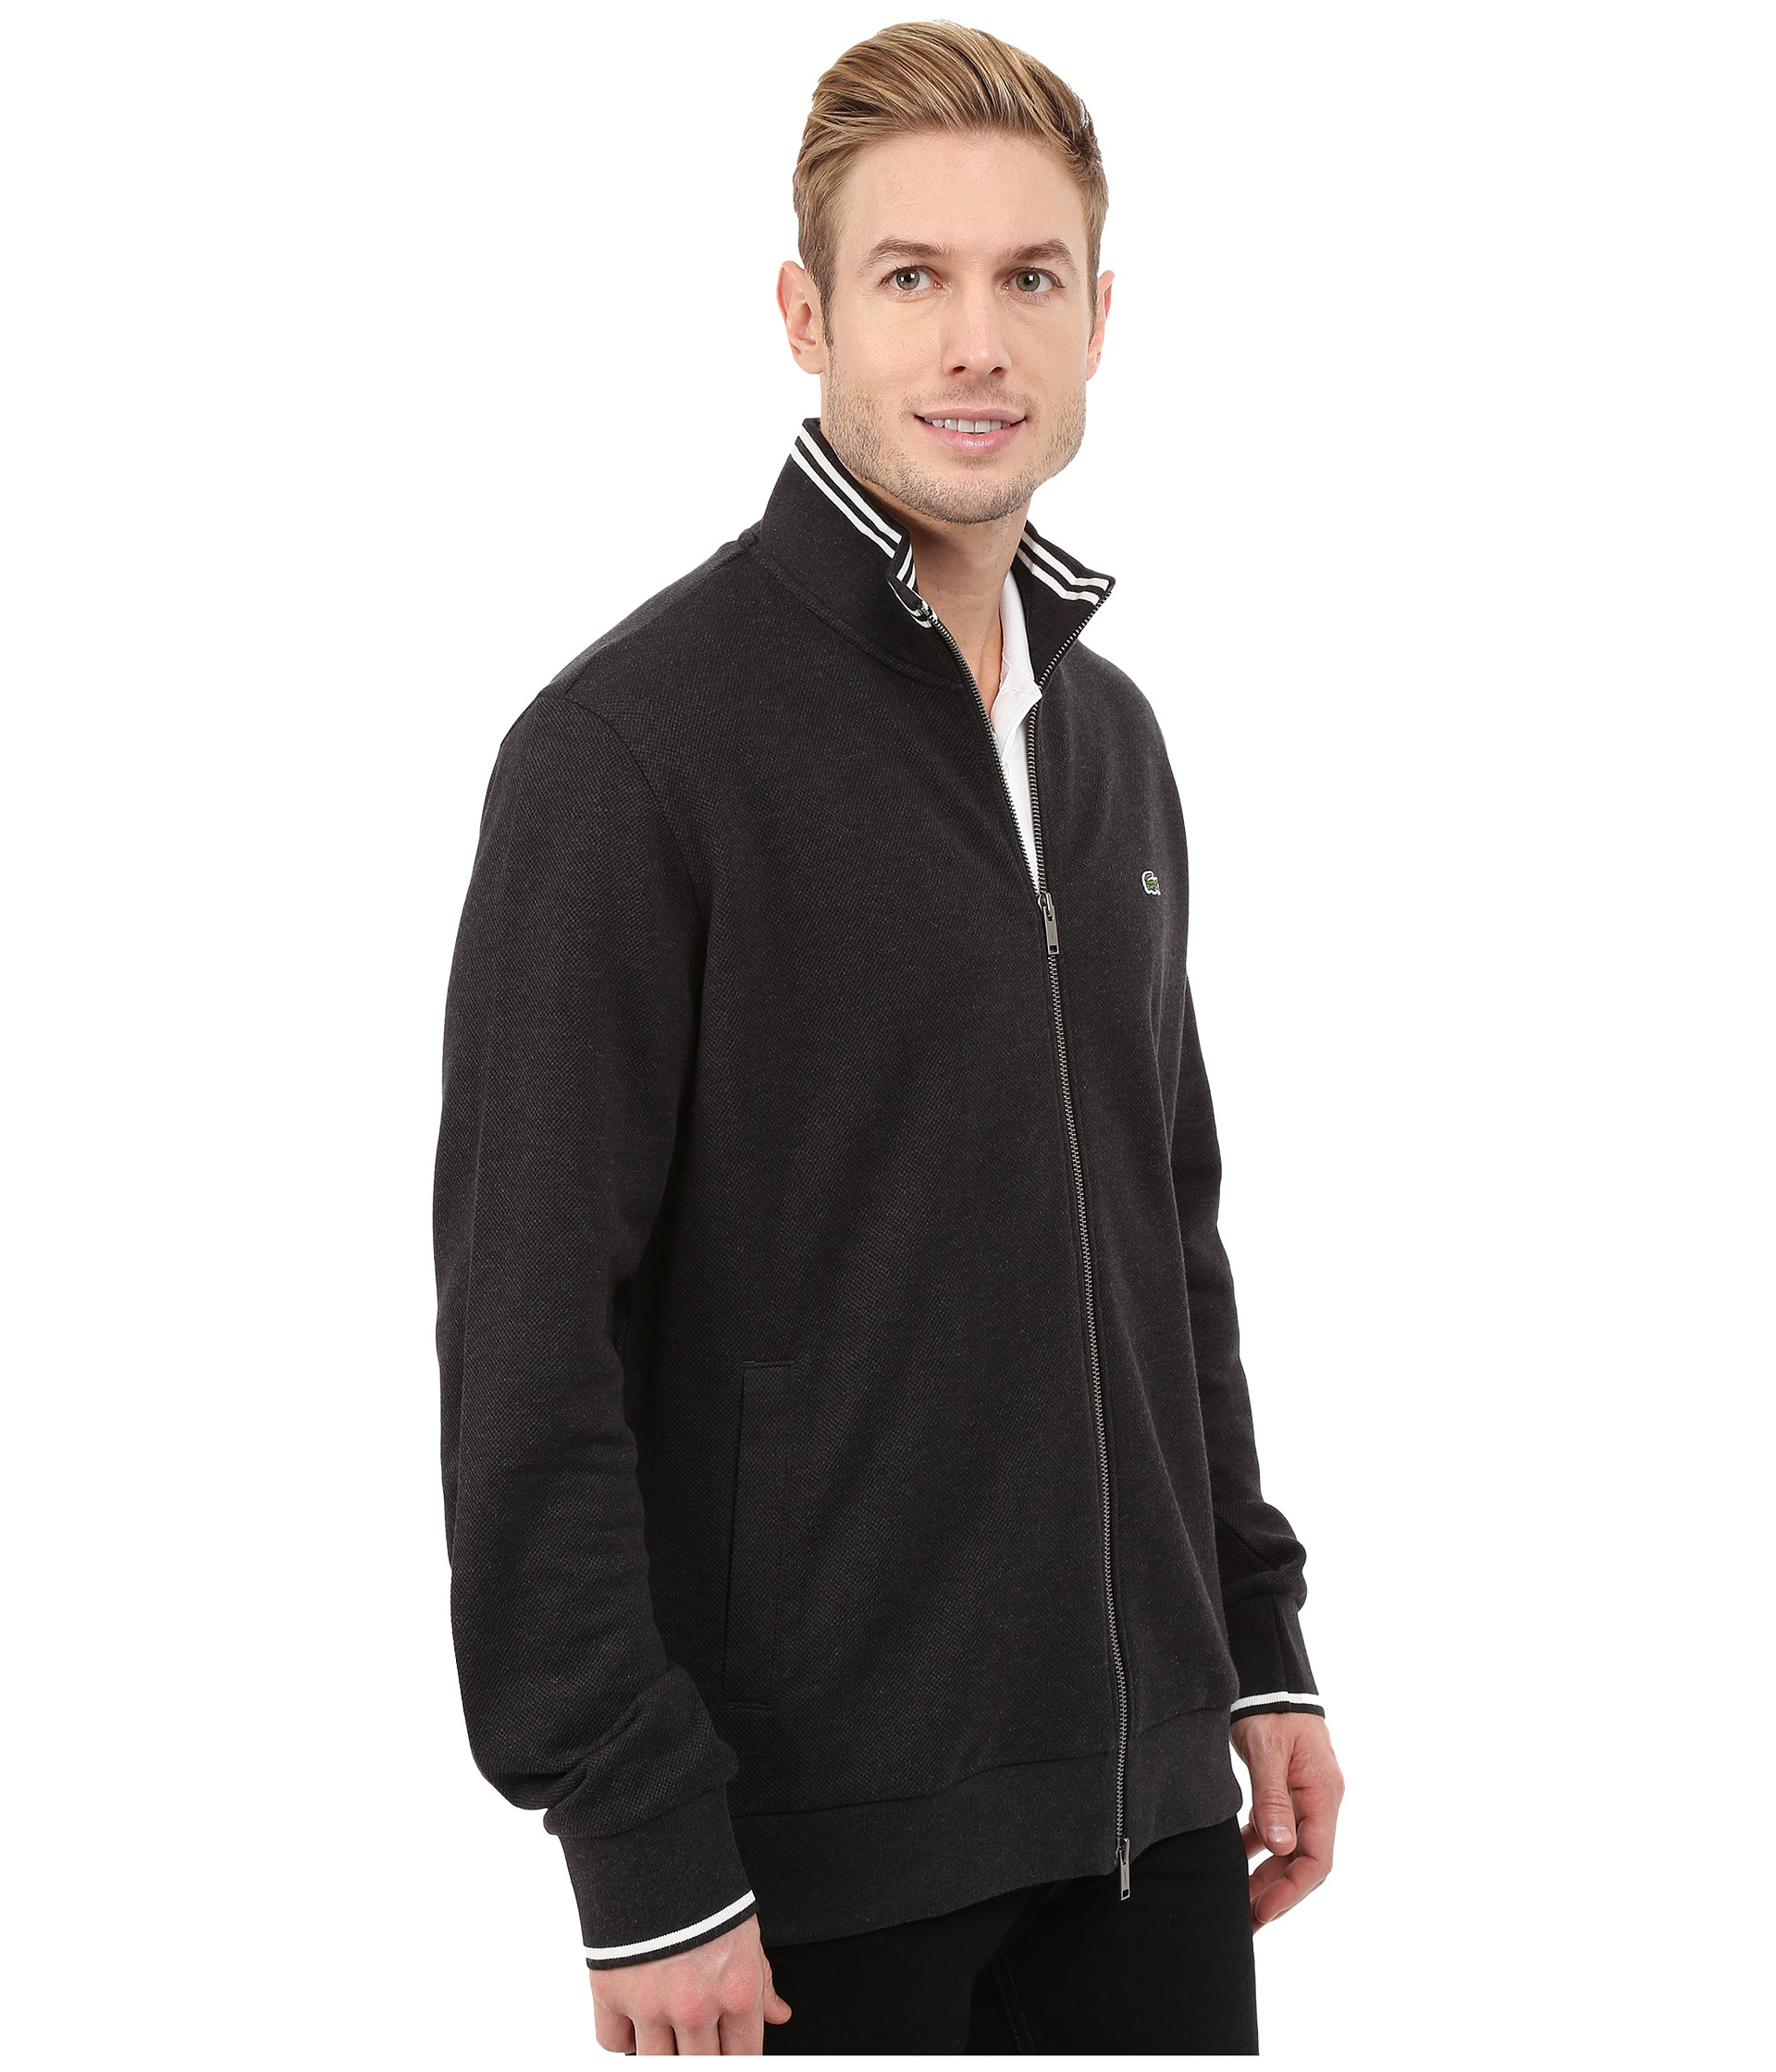 Download Lyst - Lacoste Full Zip Pique Mock Neck Sweatshirt in Black for Men